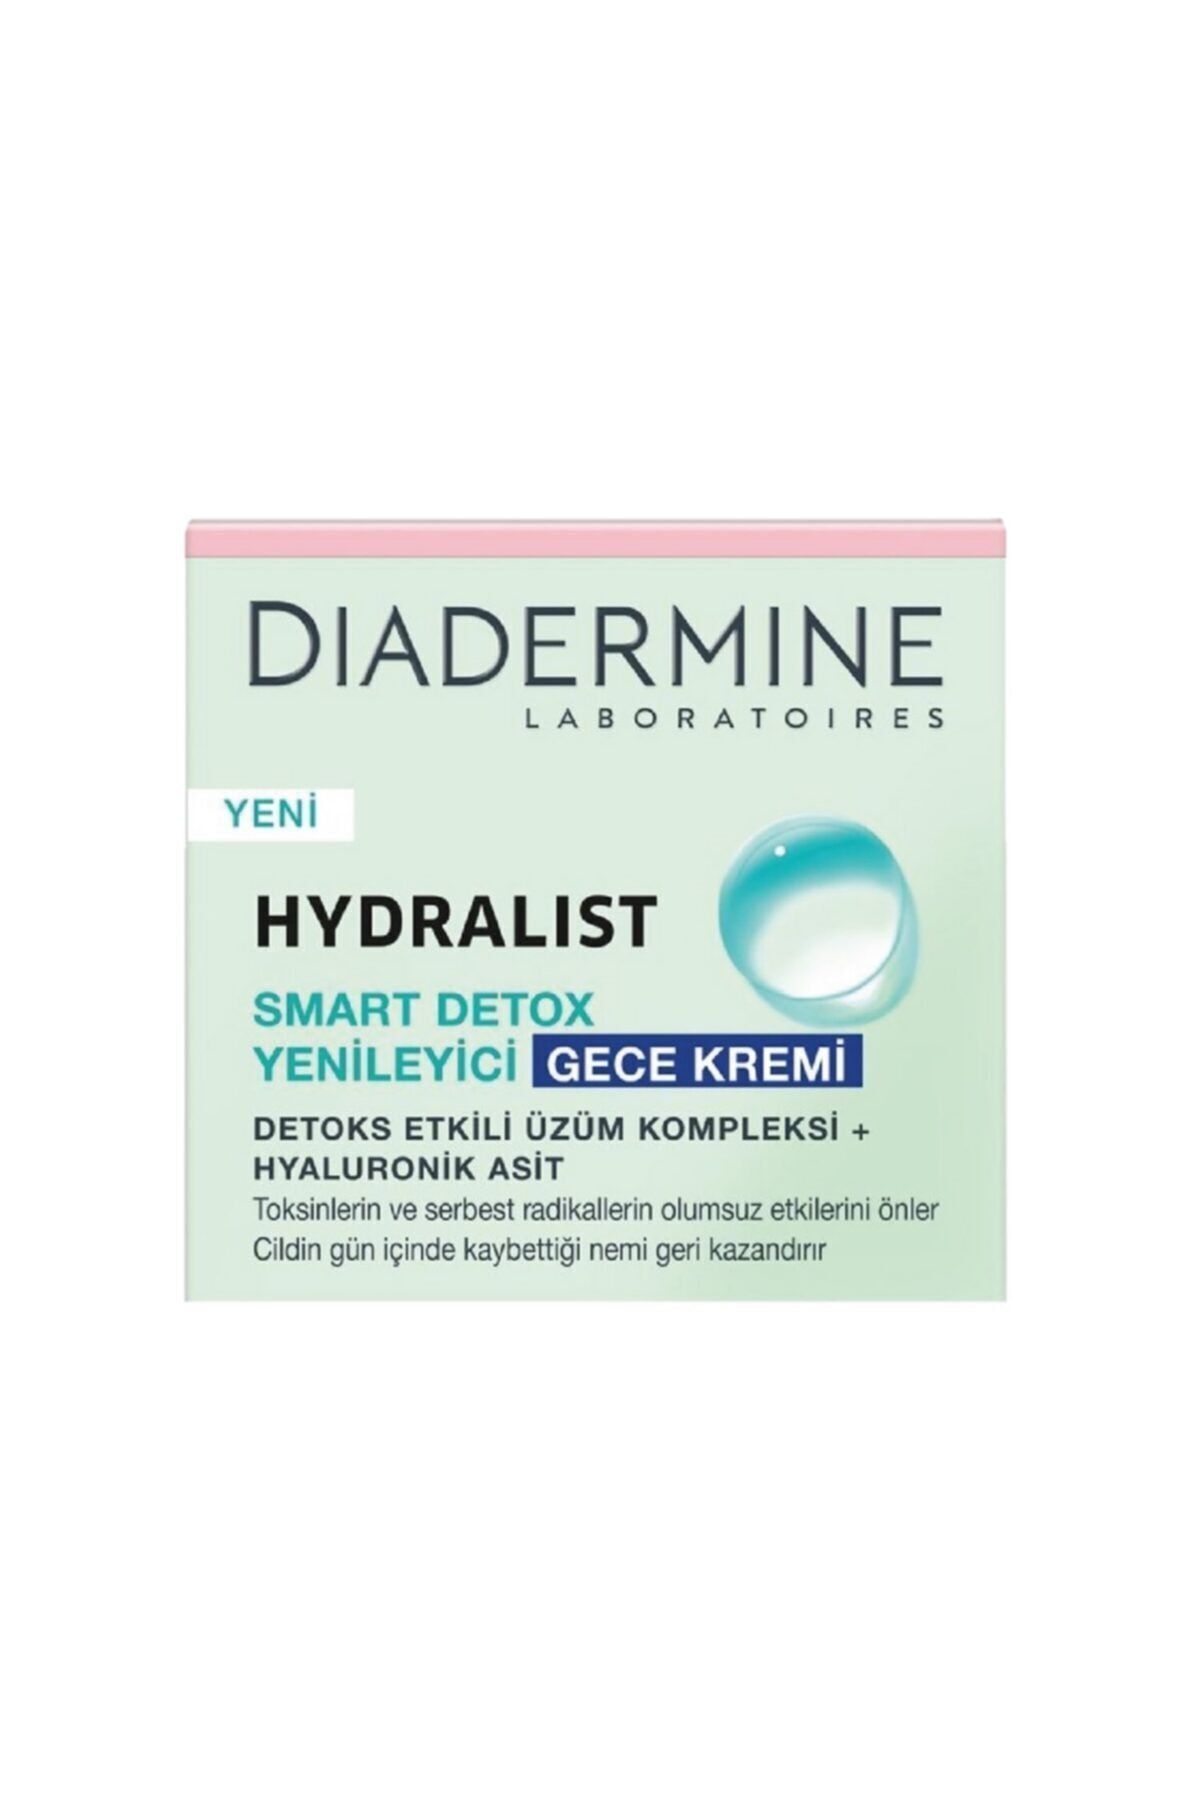 Diadermine Hydralist Smart Detox Yenileyici Gece Kremi 50 ml